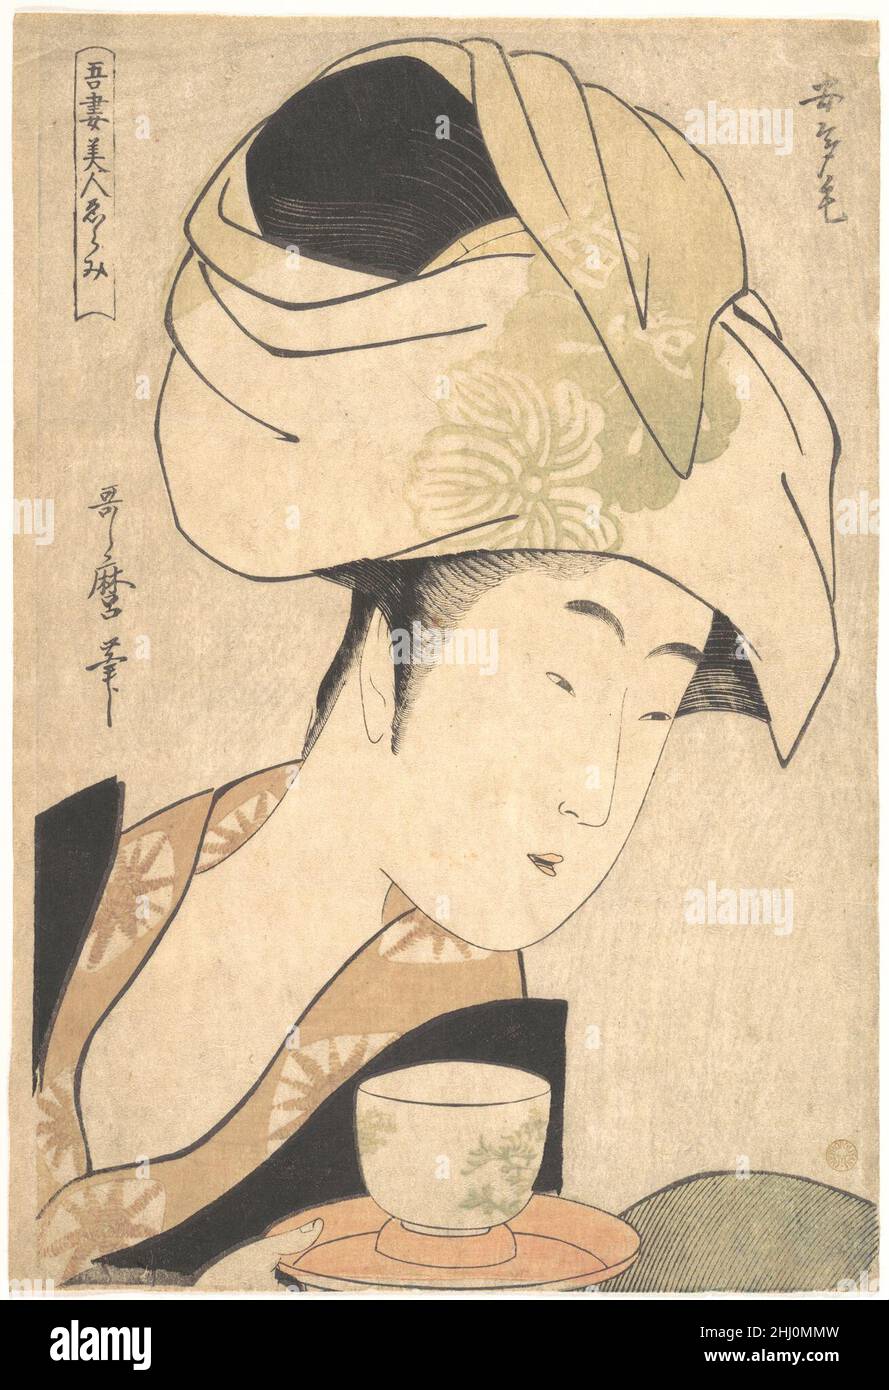 Eine Tea-House Kellnerin ca. 1795 Kitagawa Utamaro der Japaner Utamaro verändert in diesem halblangen Porträt von Okita, der berühmten Kellnerin des Naniwa-ya Teehauses in Edo, das Bild der Teehausschönheit dramatisch. Er stellt Okita nicht nur als lokale Schönheit dar, sondern auch als Gegenstand der Bewunderung, als ideale Frau. Er beseitigt jedes erzählerische Element und geht so weit, eine reine Ikone zu schaffen. Die Tasse und das Tablett, wie Attribute in einem religiösen Gemälde, dienen jetzt nur dazu, sie als Teehaus Kellnerin zu identifizieren. Die silberne Glimmer, die Utamaro als erste verwendet, glänzt wie ein Spiegel und macht sie Stockfoto